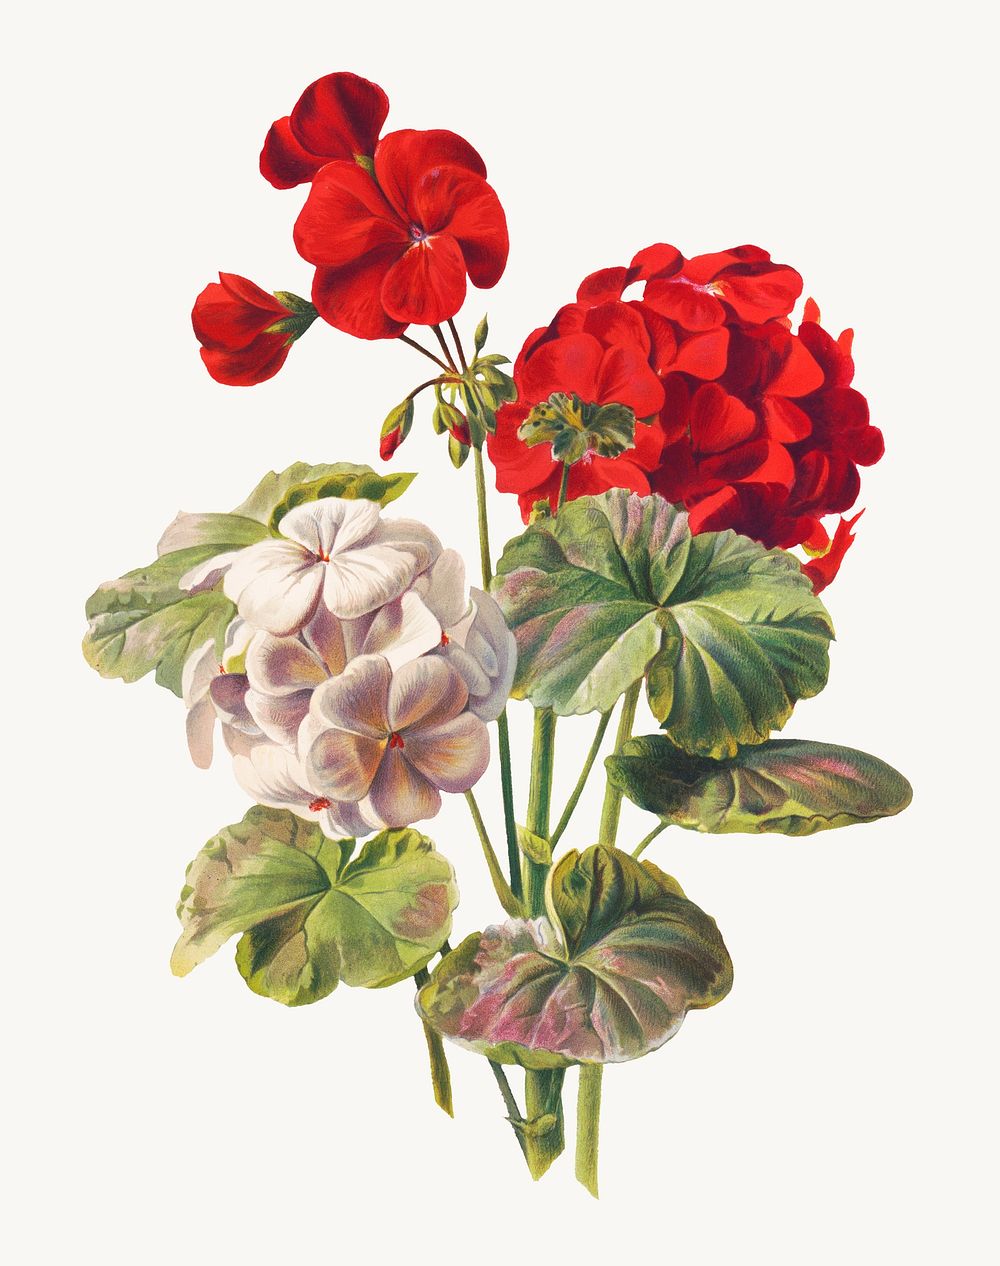 Vintage geranium flower illustration psd, remix from artworks by L. Prang & Co.